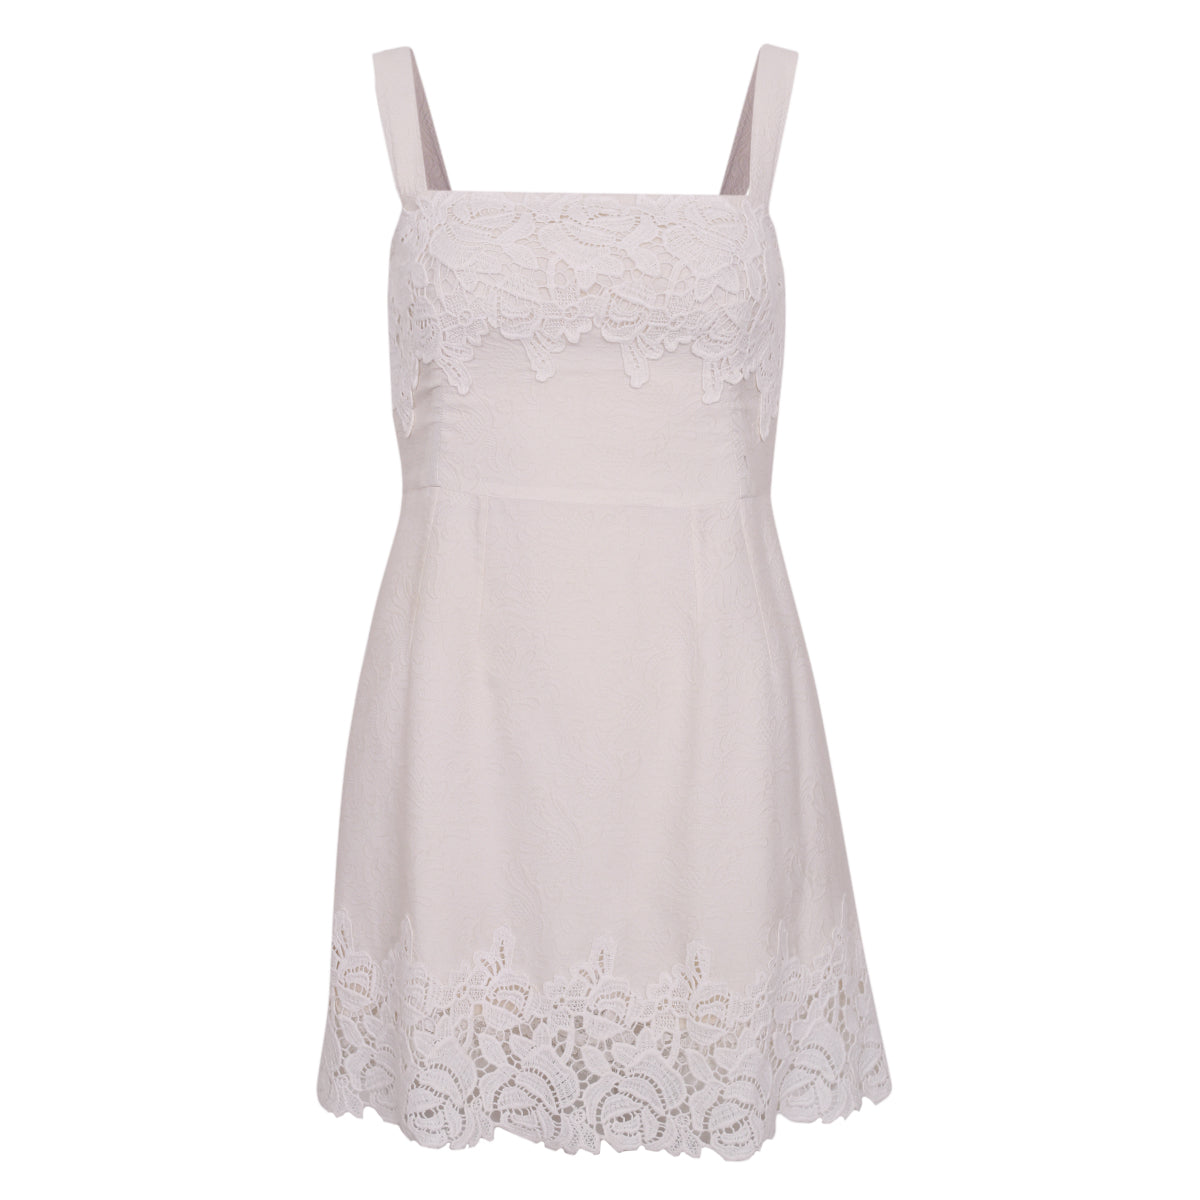 Vestido Dolce & Gabbana Branco c/ Renda Tam. 36 Br